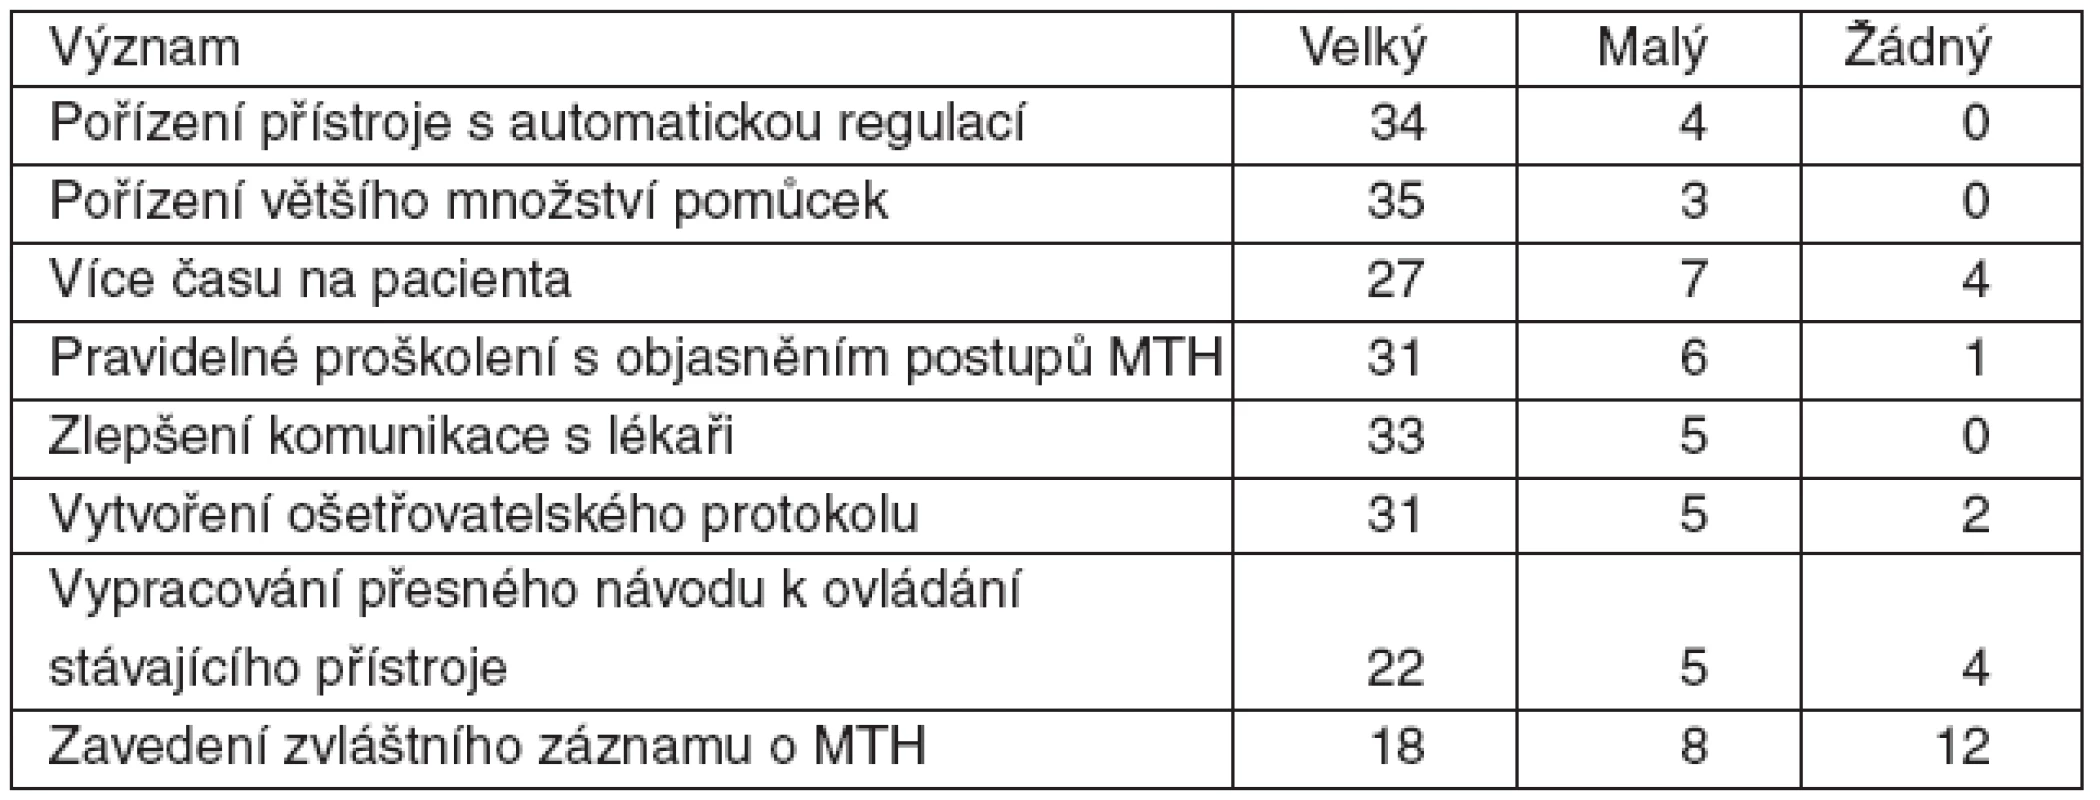 Význam opatření ke zlepšení procesu provádění terapeutické hypotermie podle (MTH) sester (41 respondentů)